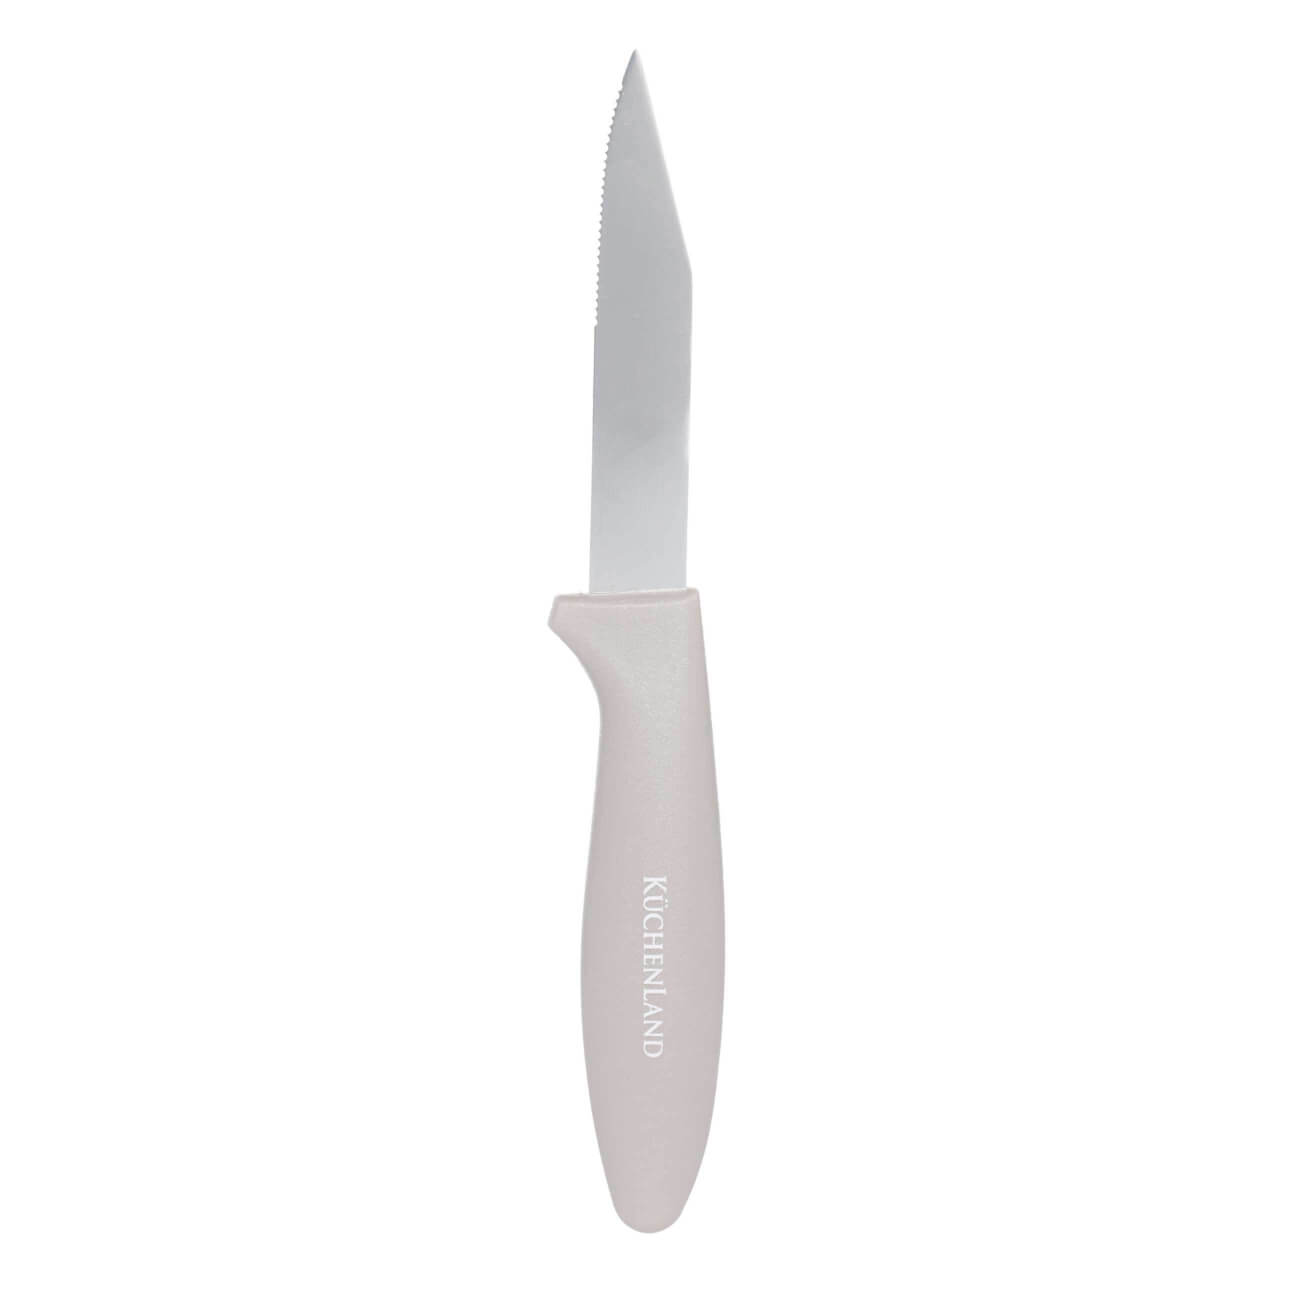 Нож для чистки овощей, 8 см, сталь/пластик, серо-коричневый, Regular полено для чистки дымоxодов